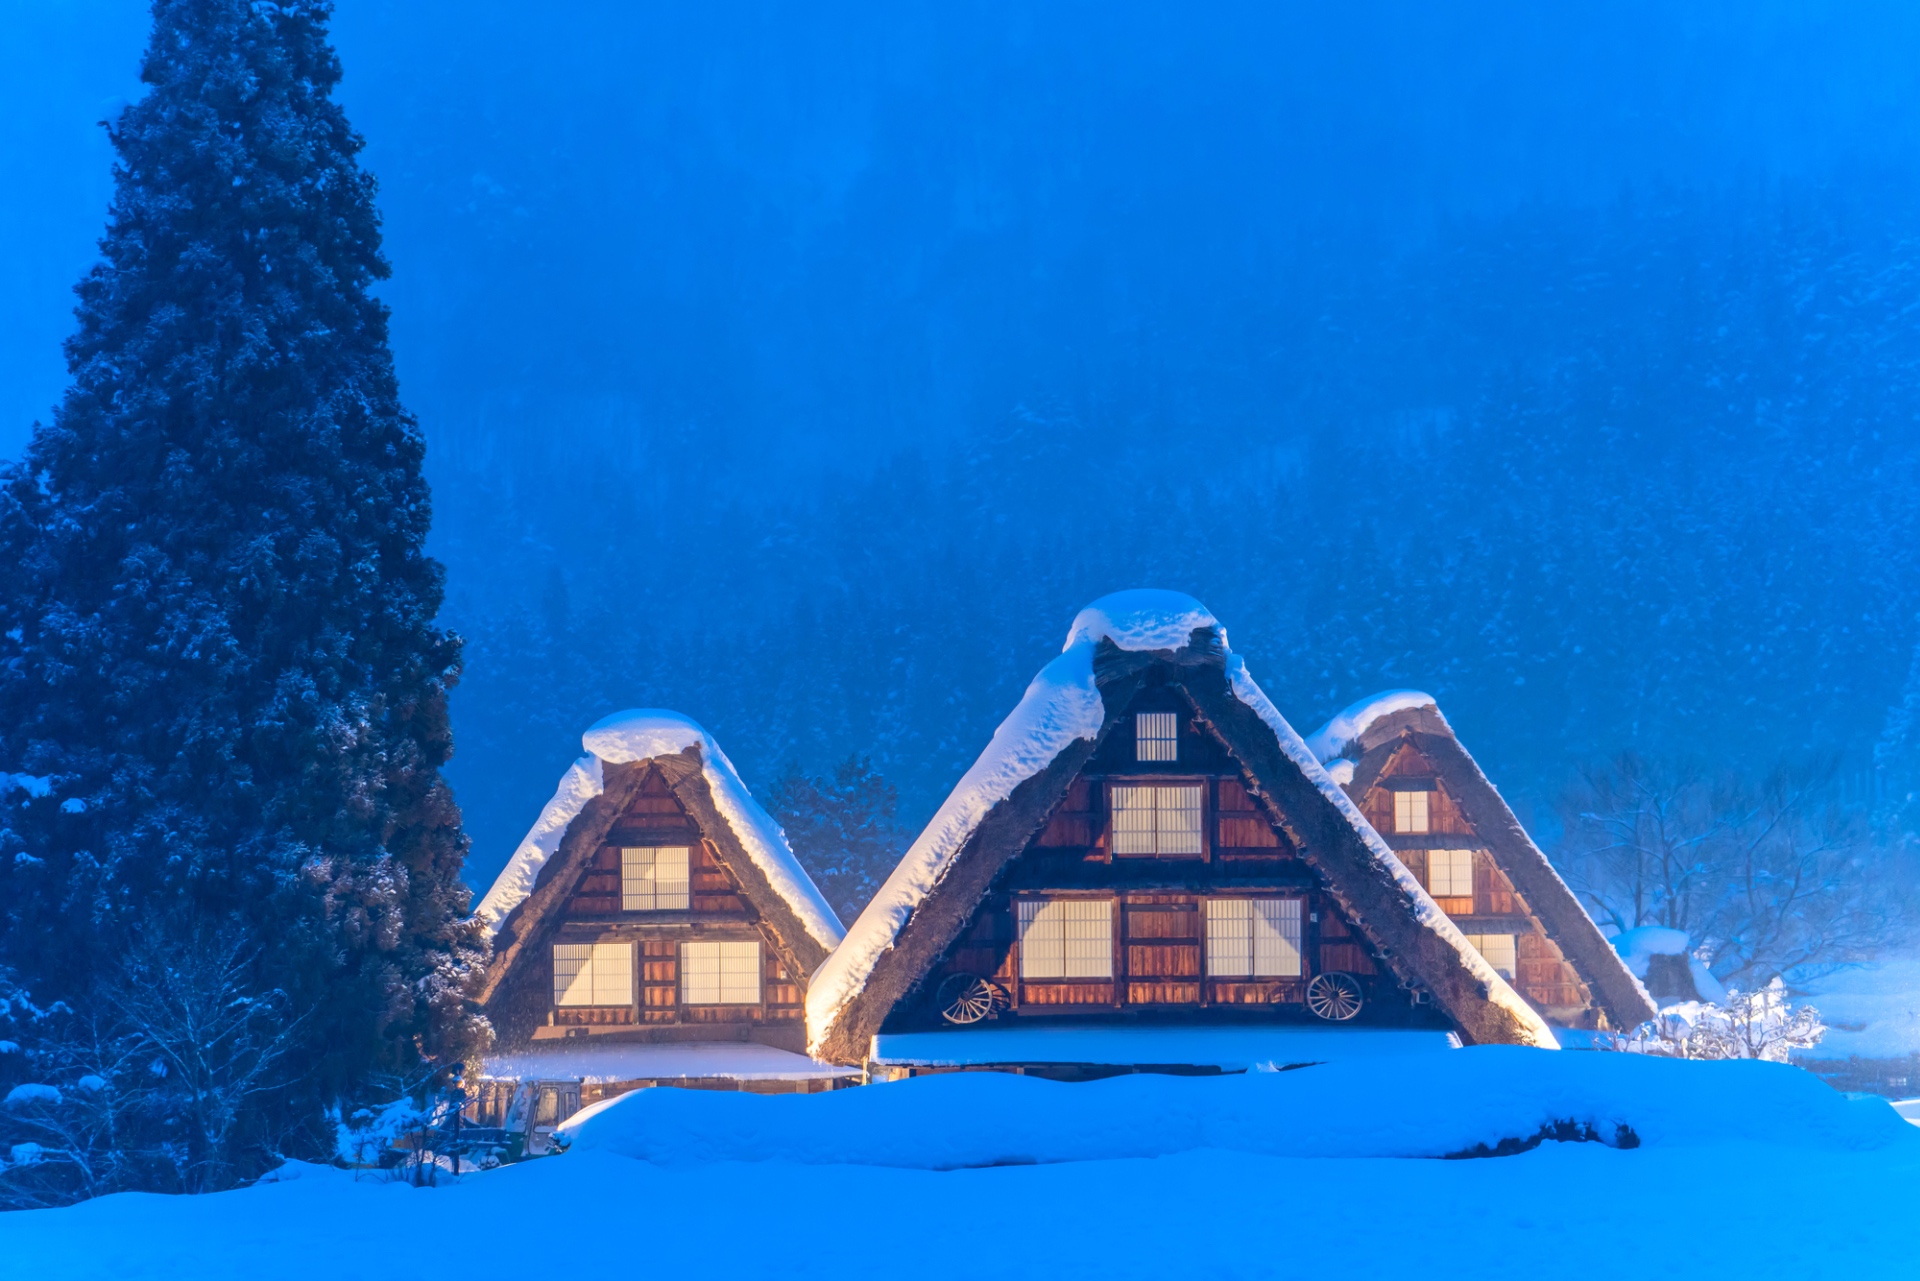 Die Strohdachhäuser von Shirakawago an einem Wintertag.